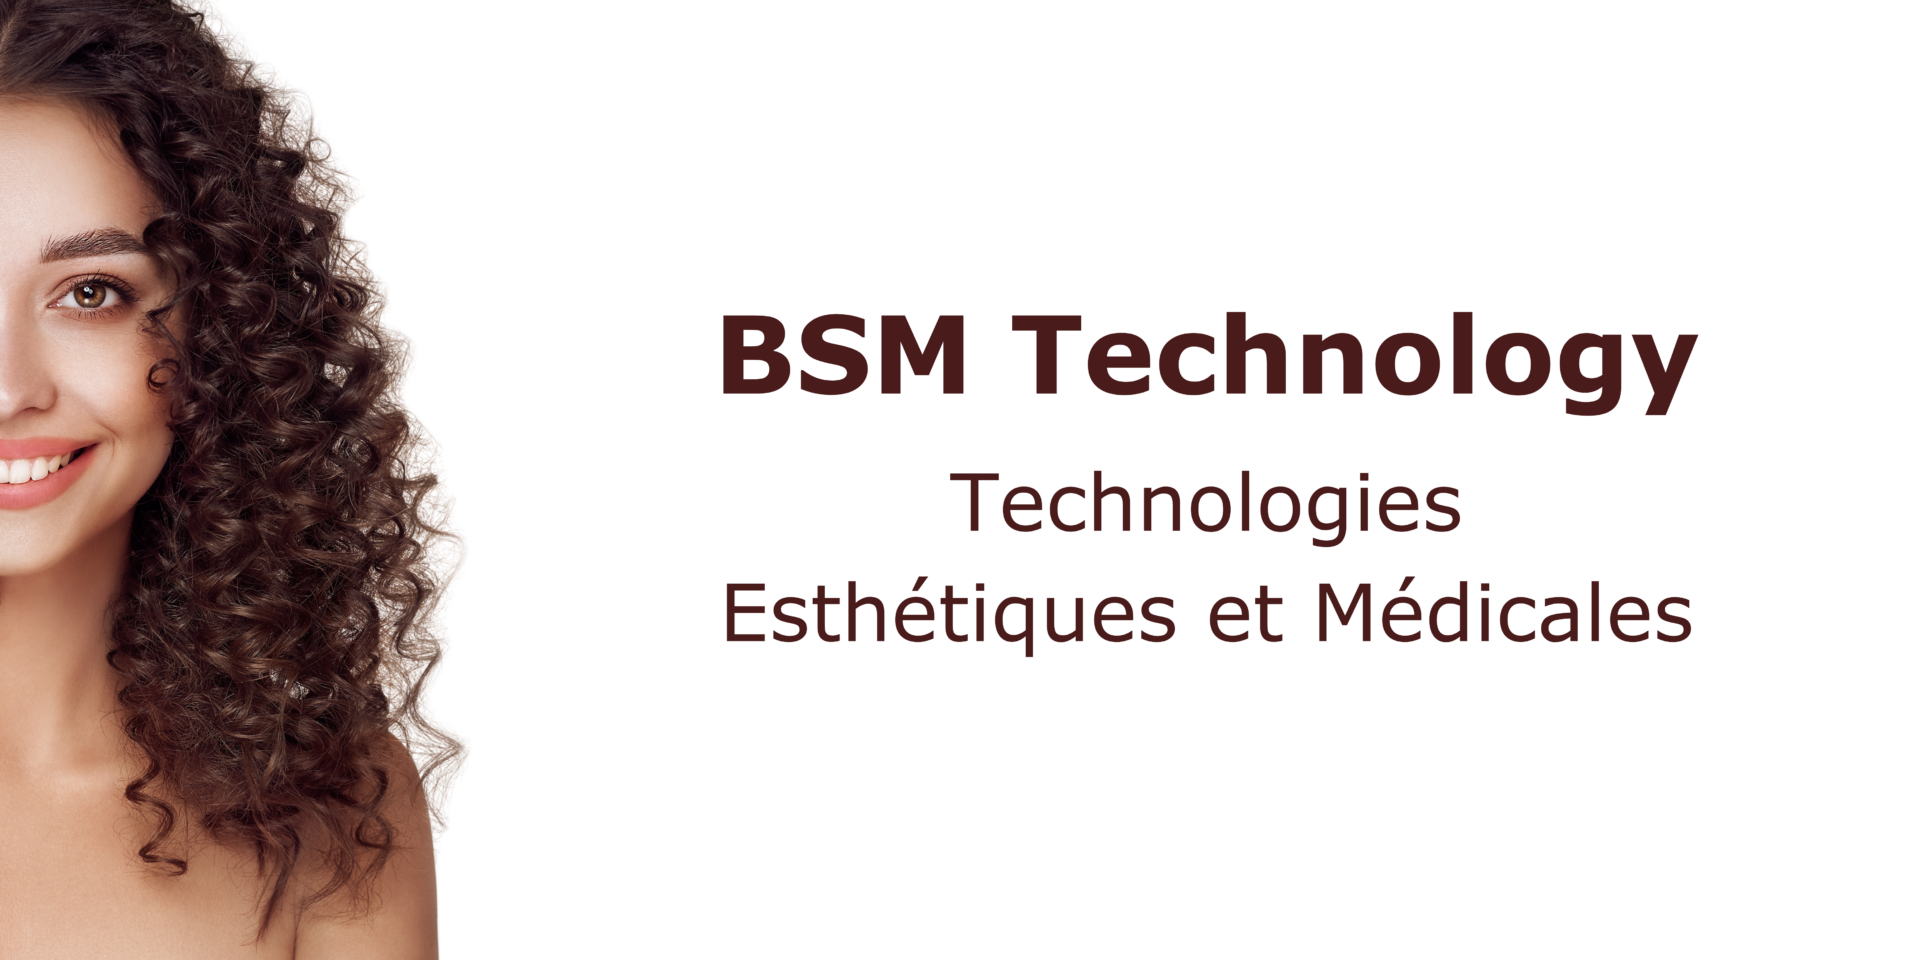 BSM Technology fournisseur de technologies esthetiques et medicales